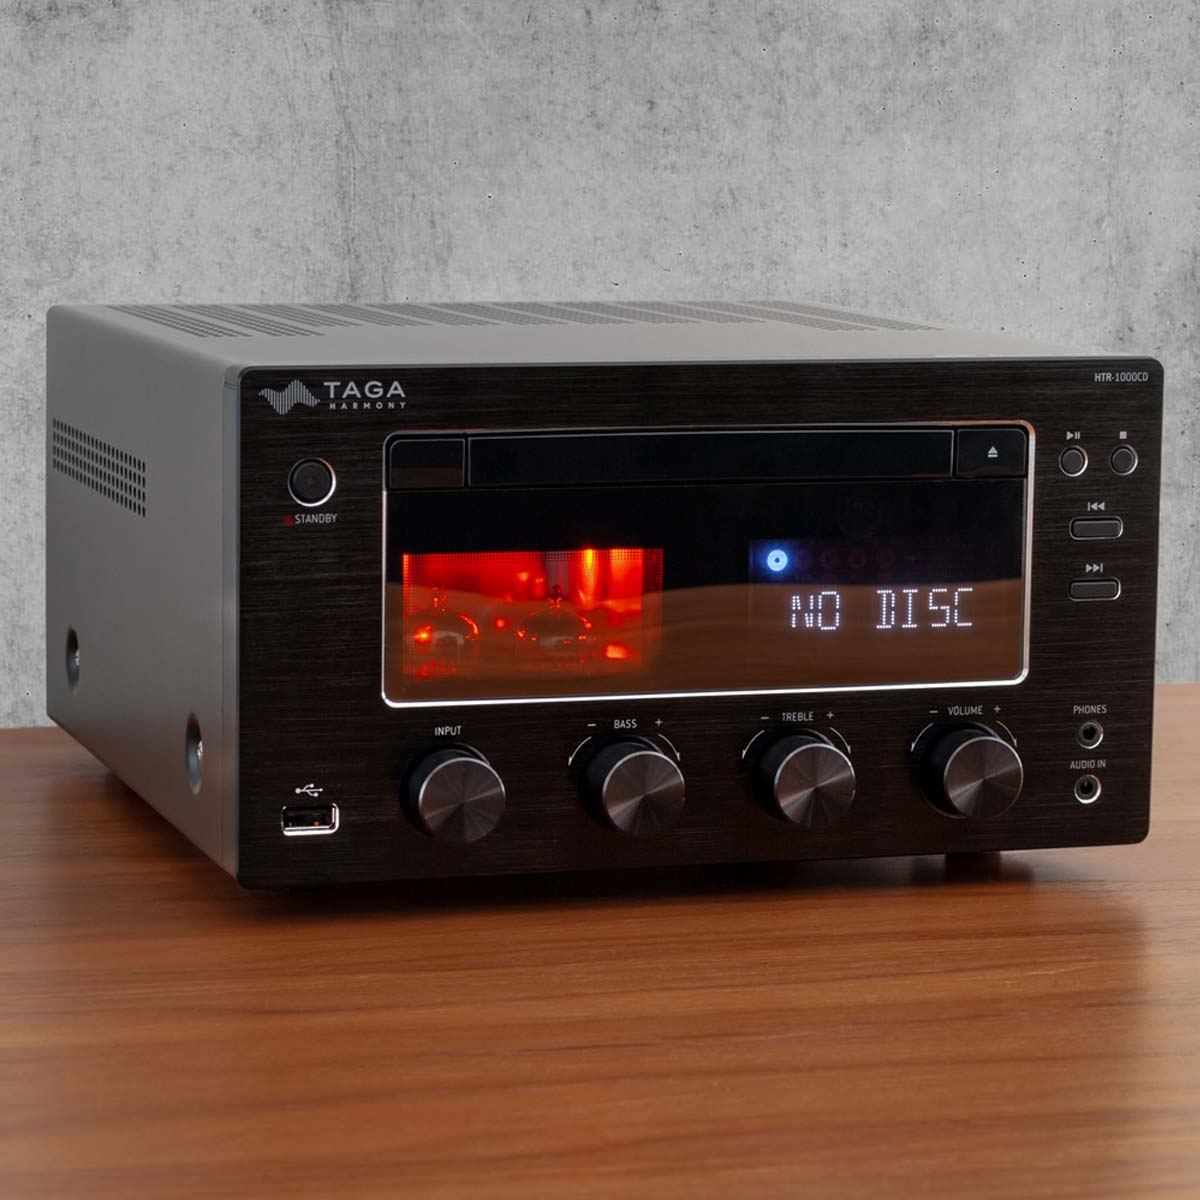 TAGA Harmony HTR-1000CD v.2 Hybrid Stereo DAB+ FM CD Receiver - Silver